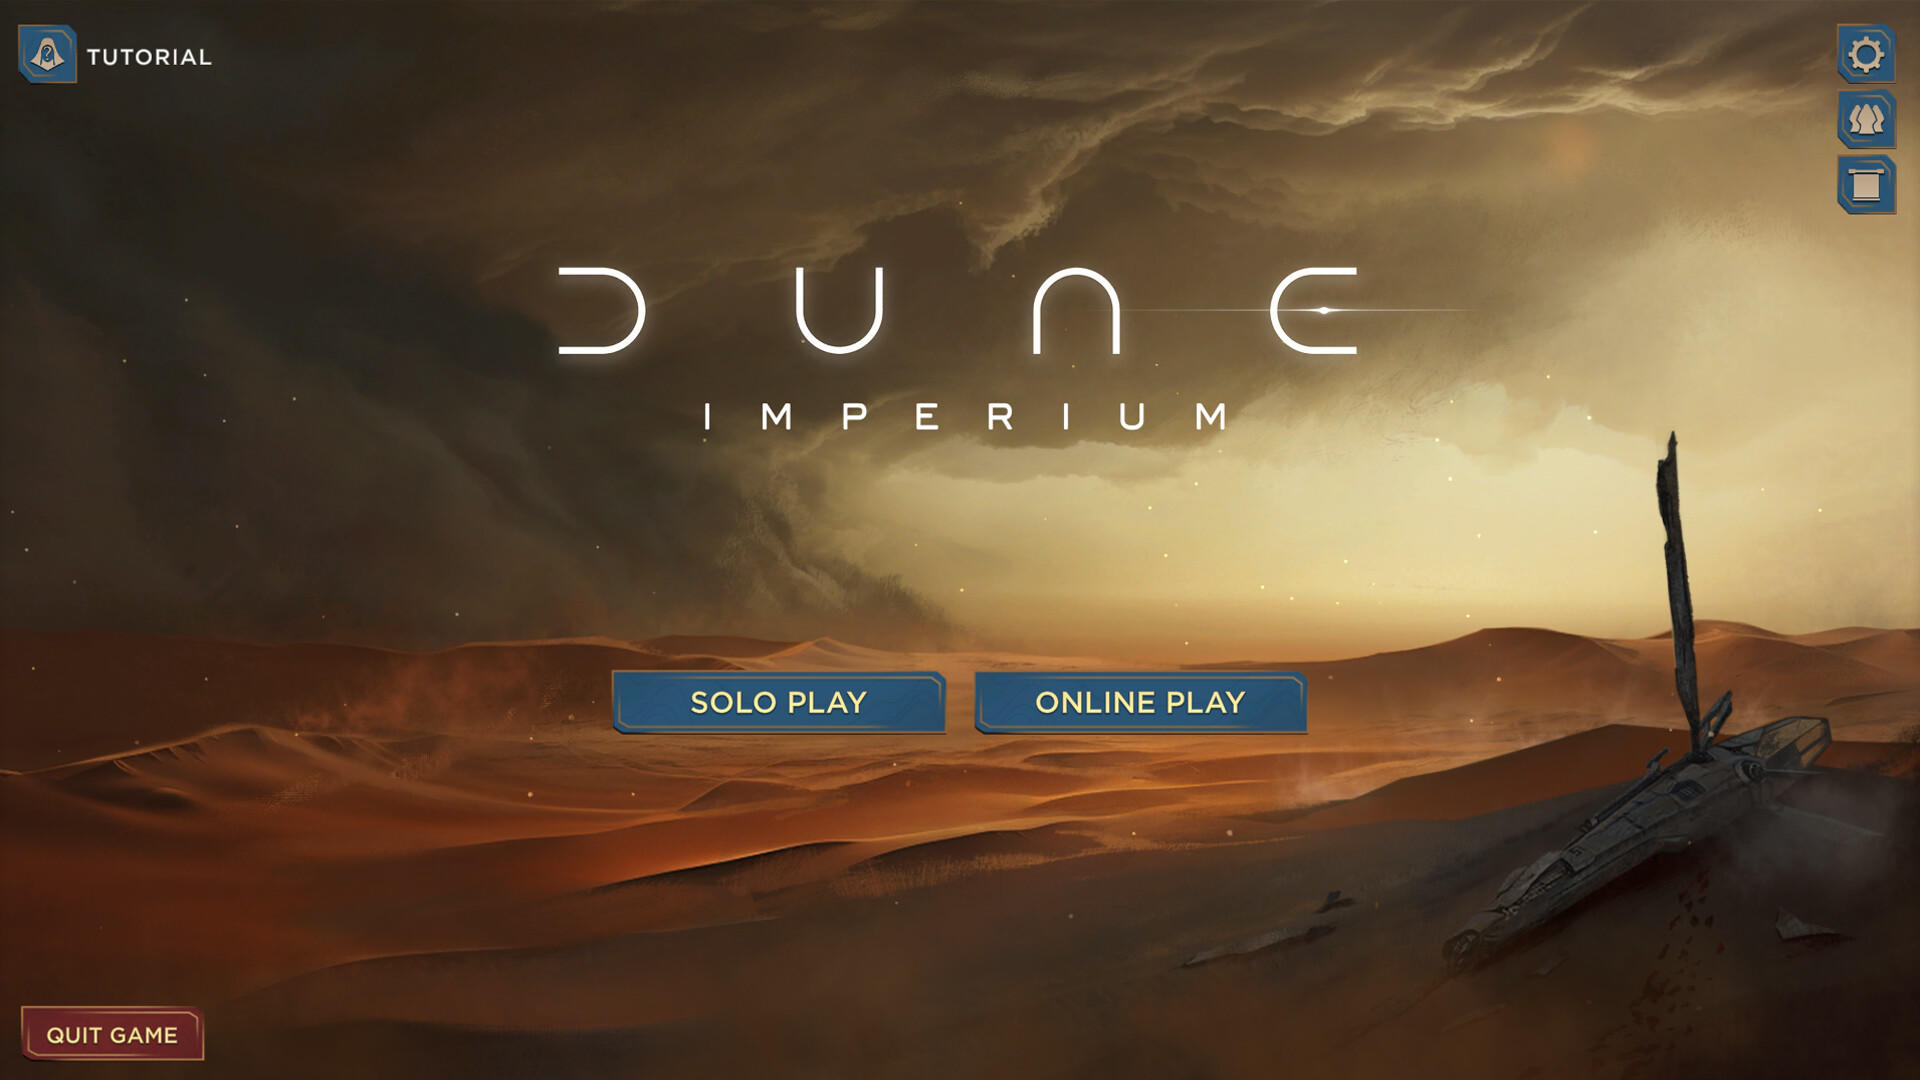 Dune: Imperium screenshot game